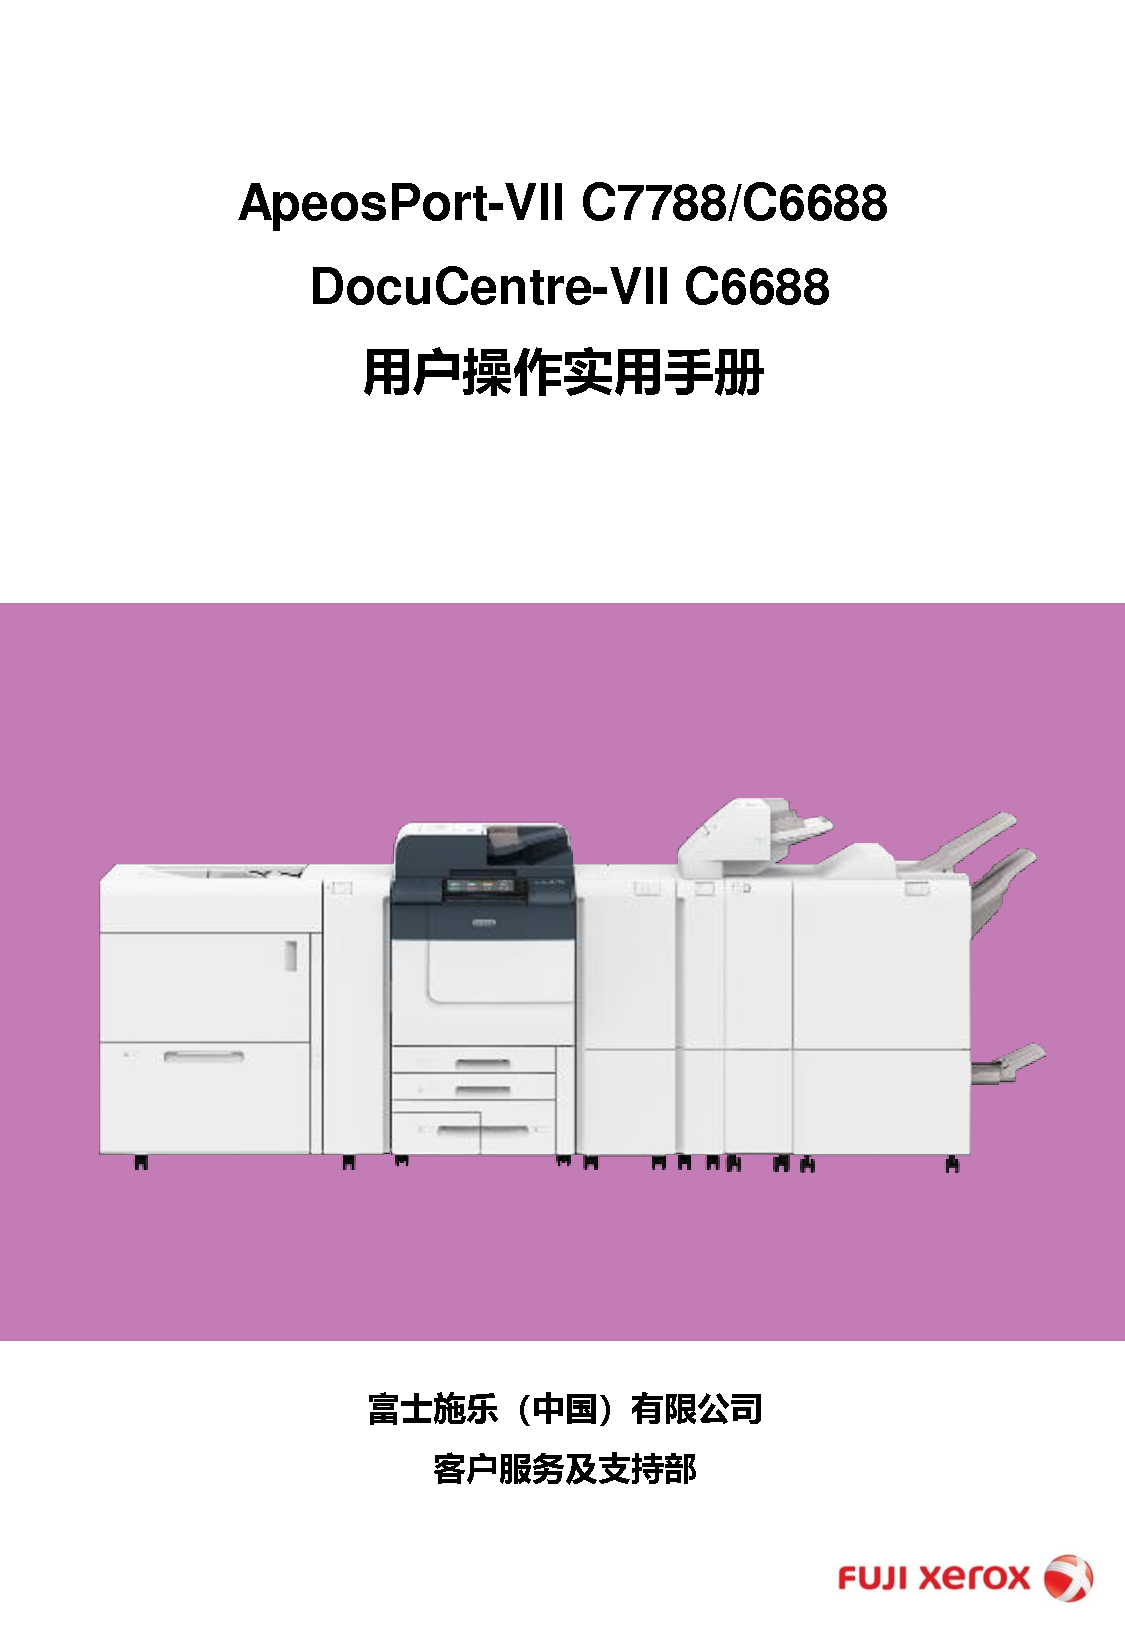 富士施乐 Fuji Xerox ApeosPort-VII C6688, DocuCentre-VII C6688 使用说明书 封面